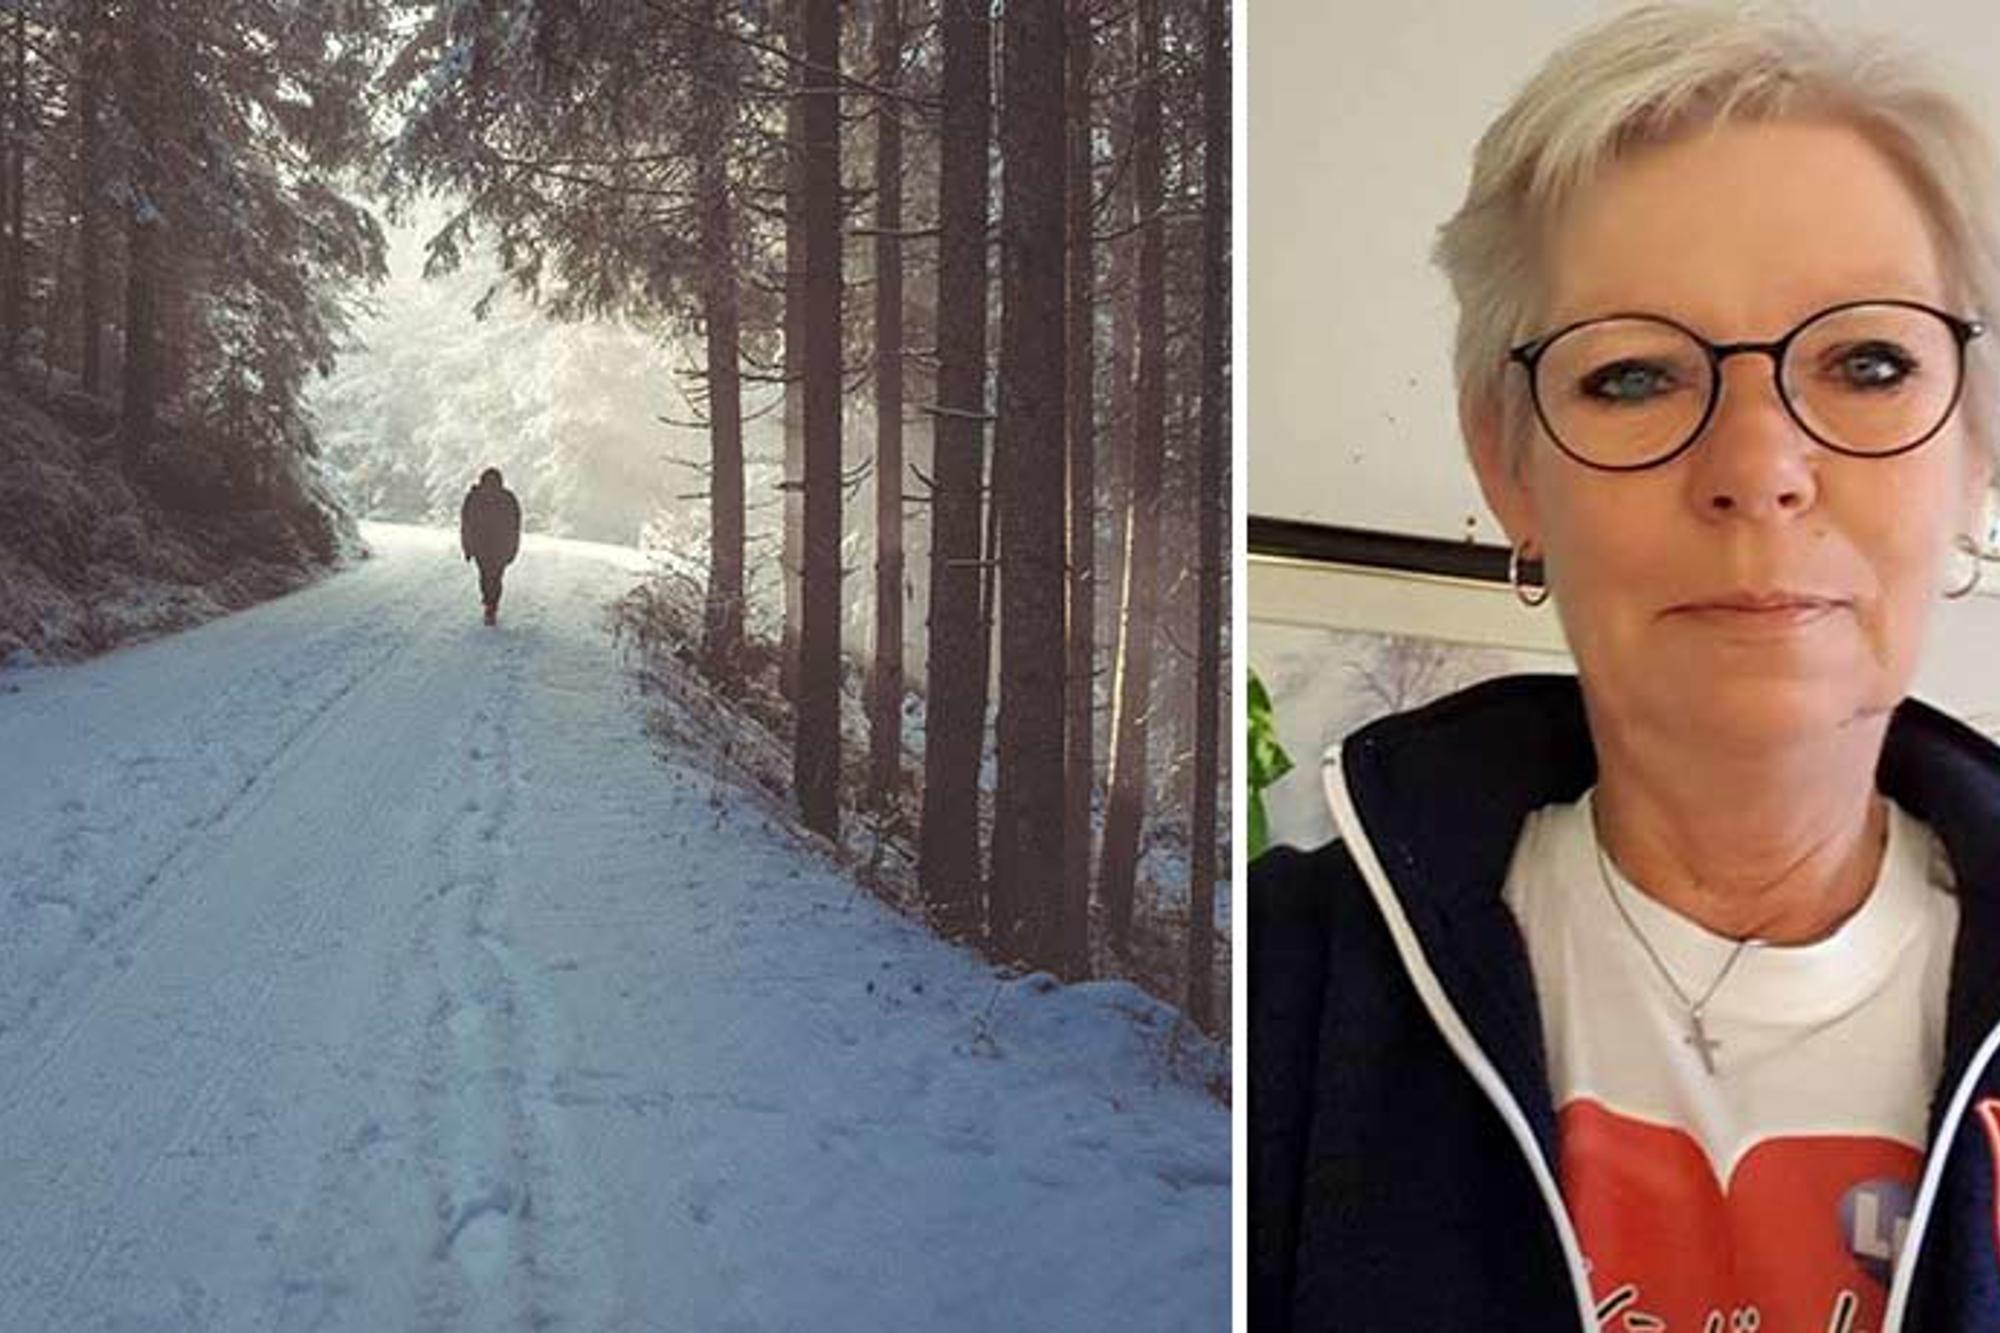 Till vänster: Ryggtavlan på en person som är ute och går på en snötäckt stig i skogen. Till höger: Porträttbild av Ihlona Sjödin.